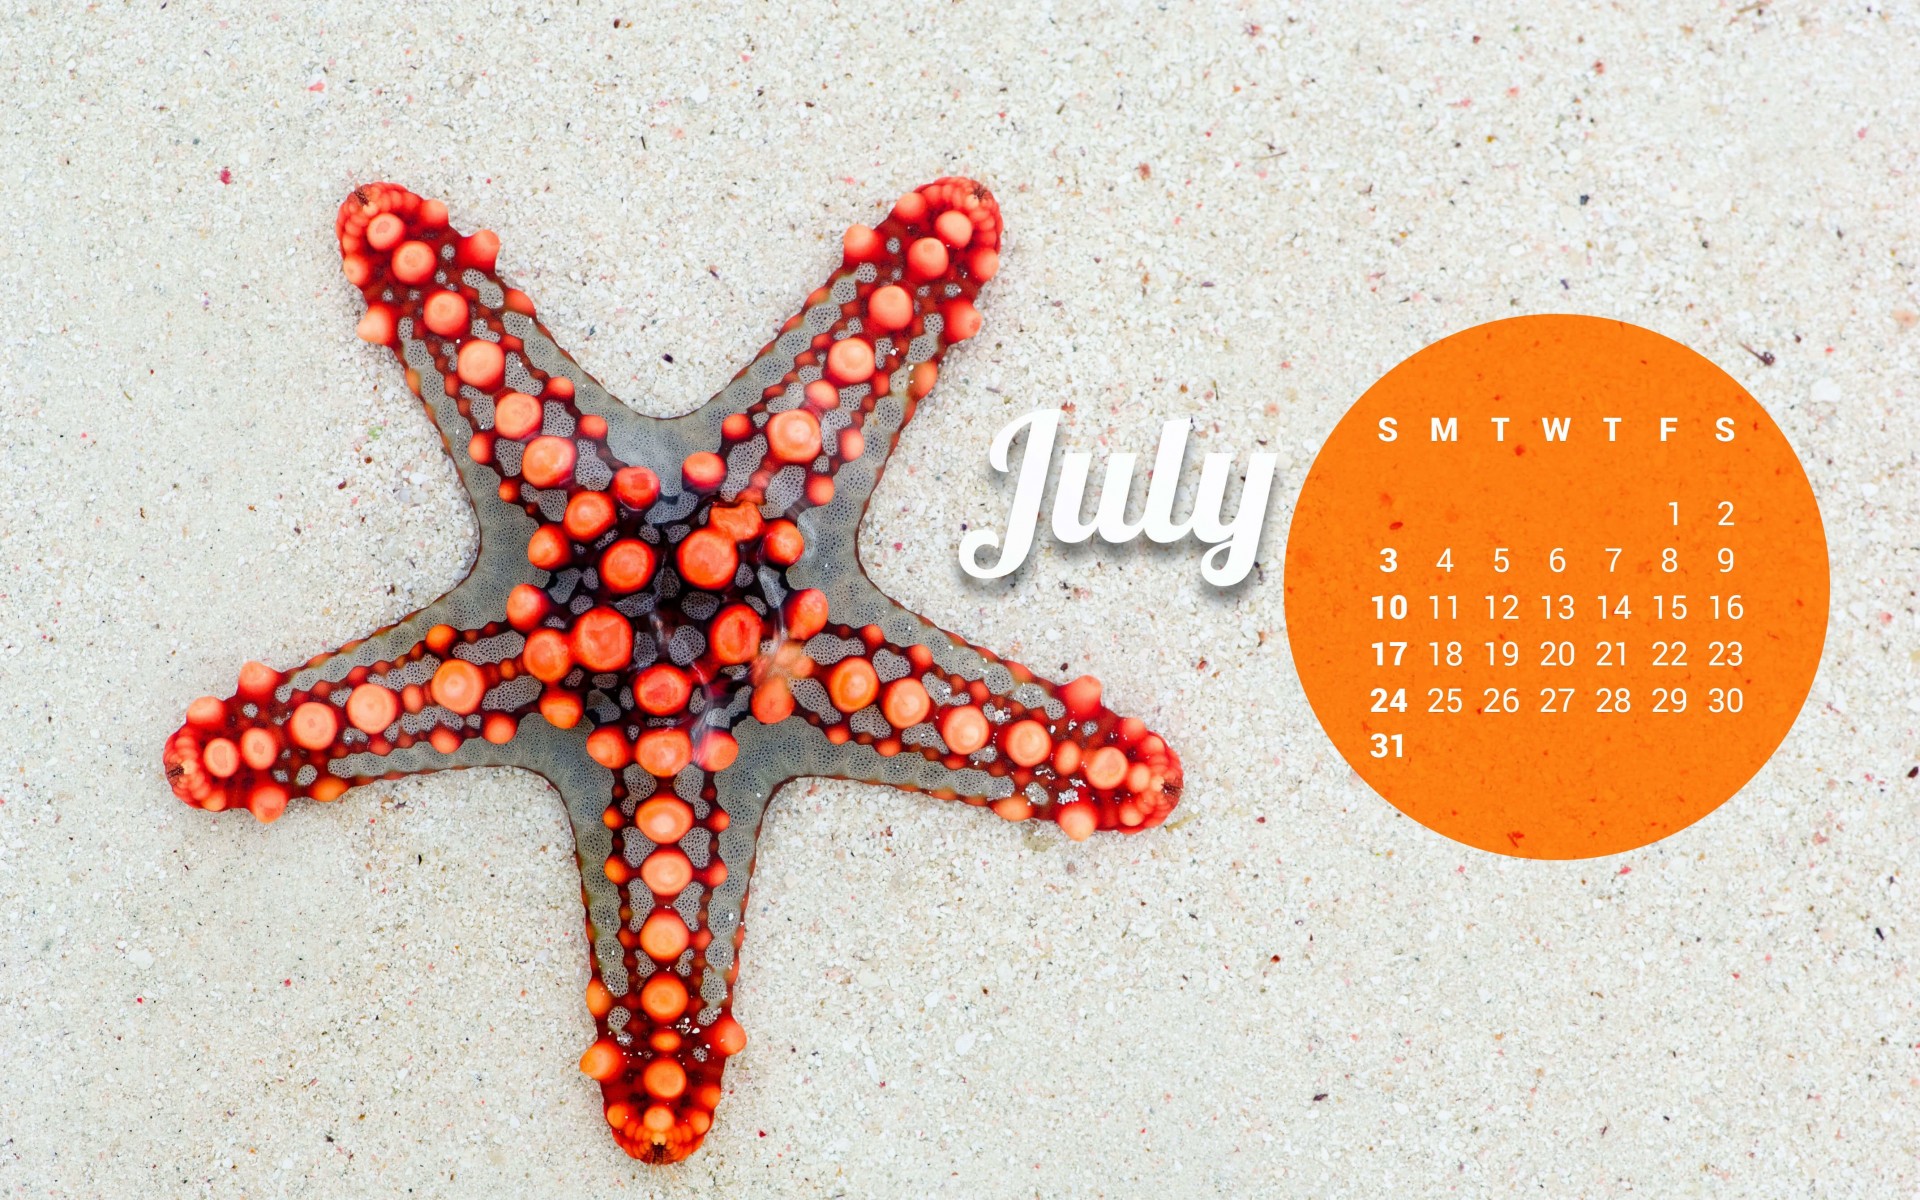 July 2016 Calendar Wallpaper for Desktop 1920x1200